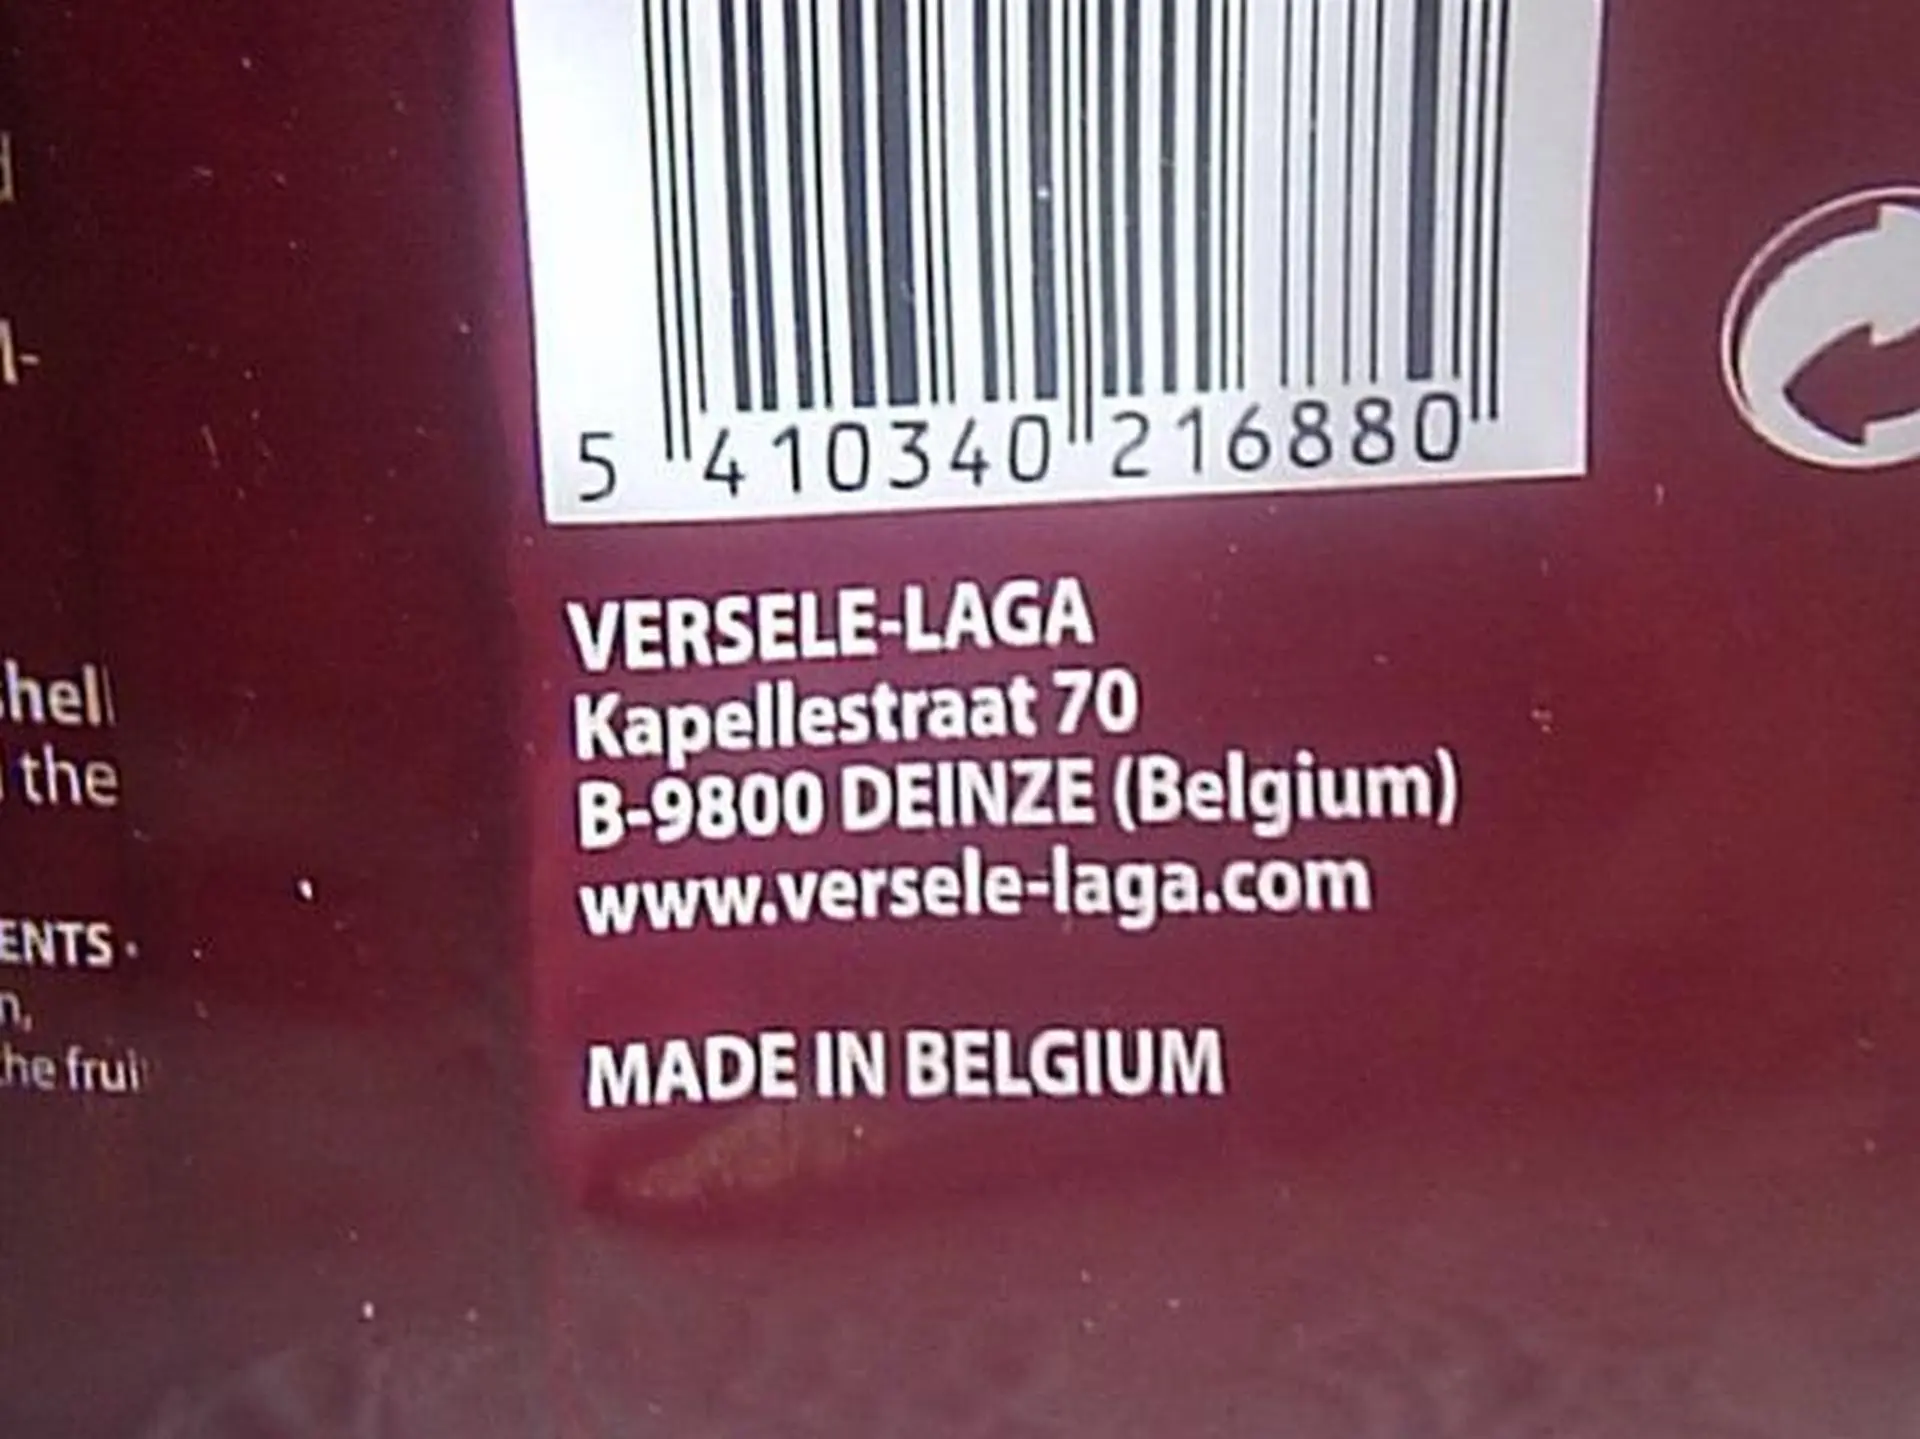 Made in Belgium.